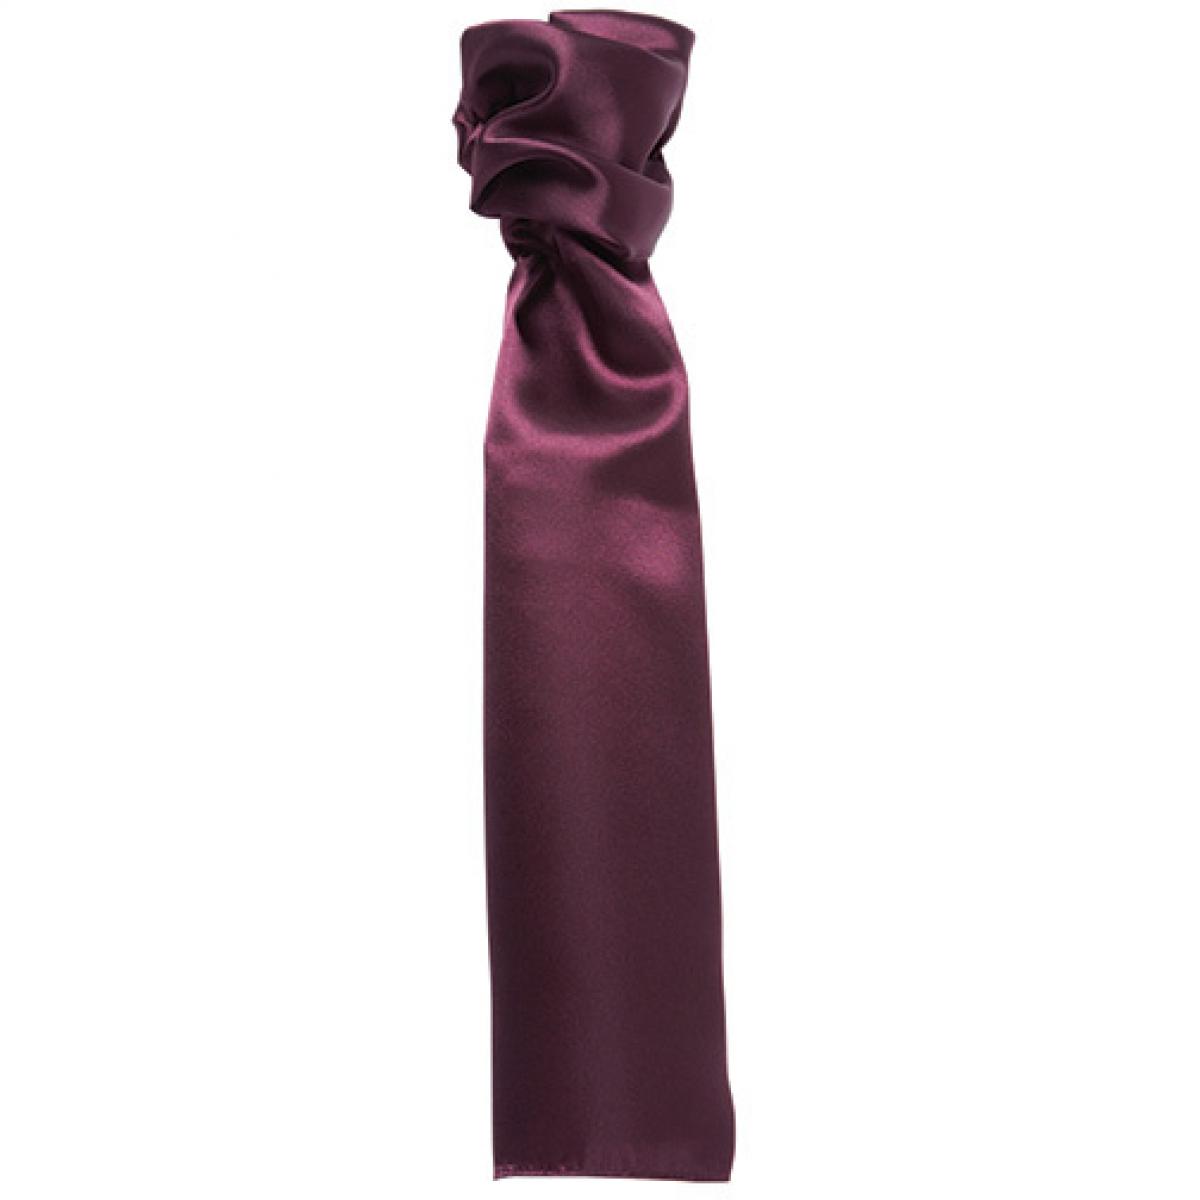 Hersteller: Premier Workwear Herstellernummer: PR730 Artikelbezeichnung: Damenhalstuch uni - 140 x 25 cm Farbe: Purple (ca. Pantone 5185C)